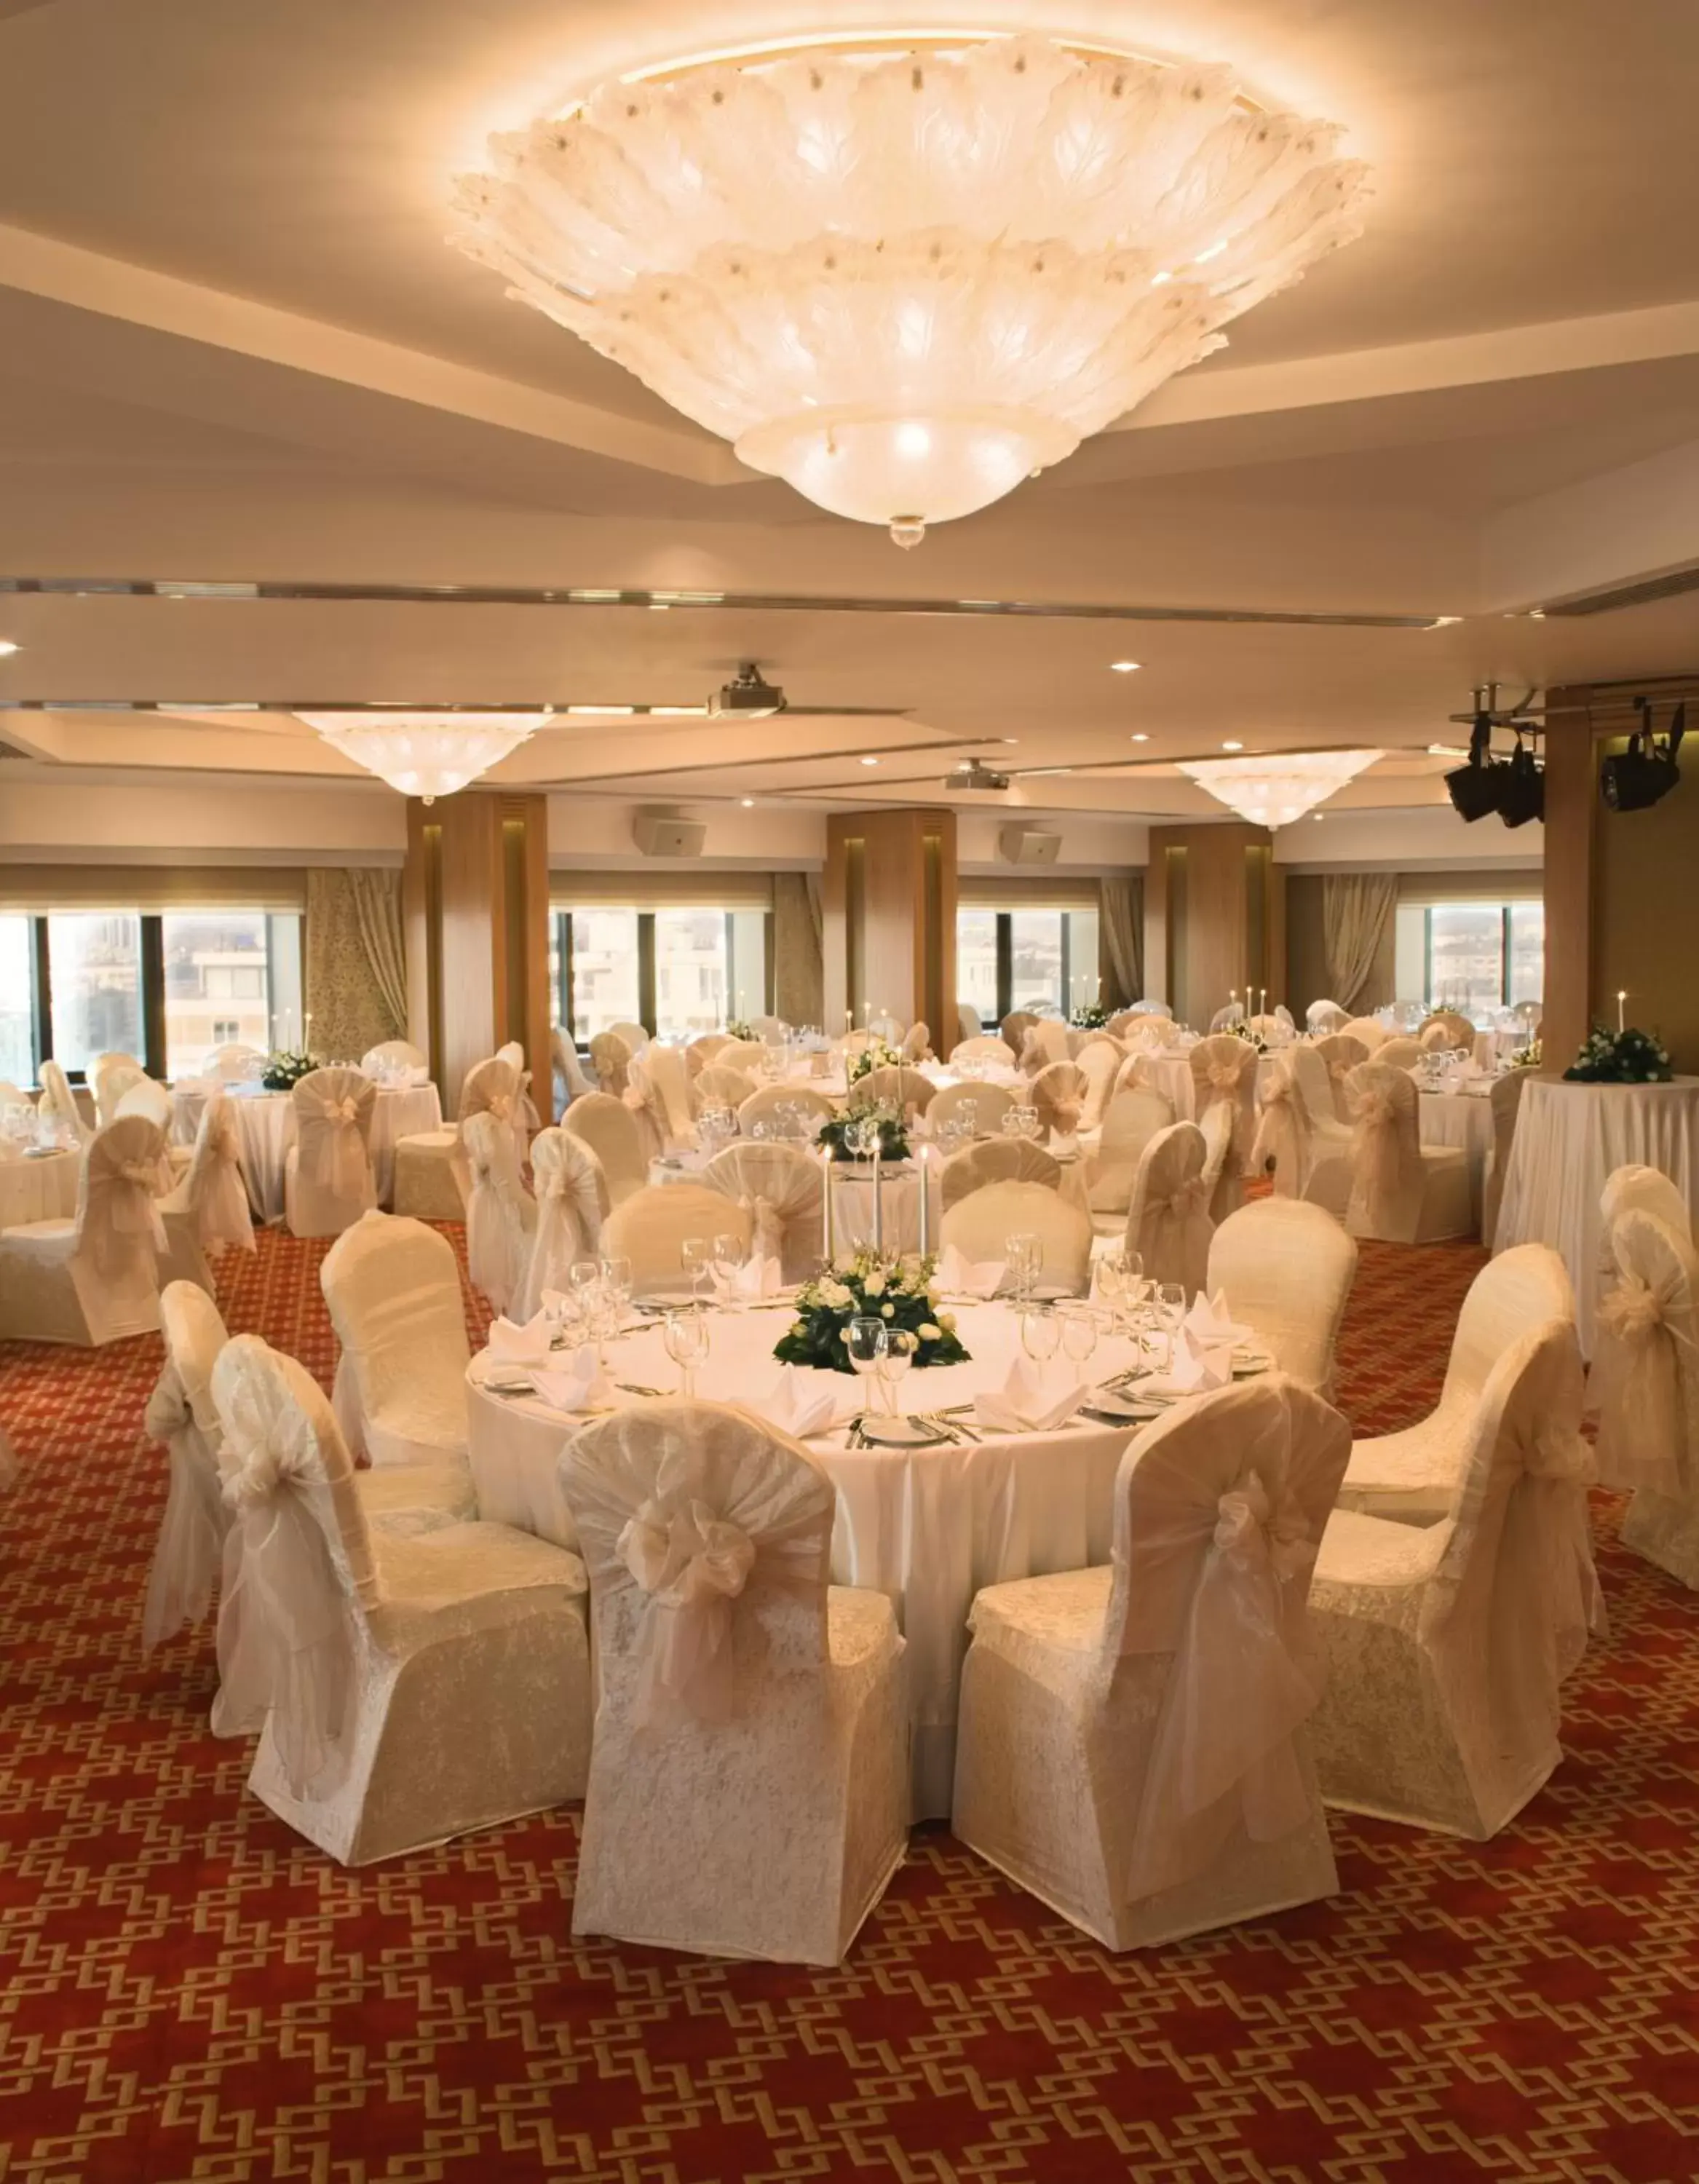 Banquet/Function facilities, Banquet Facilities in Mövenpick Hotel Izmir